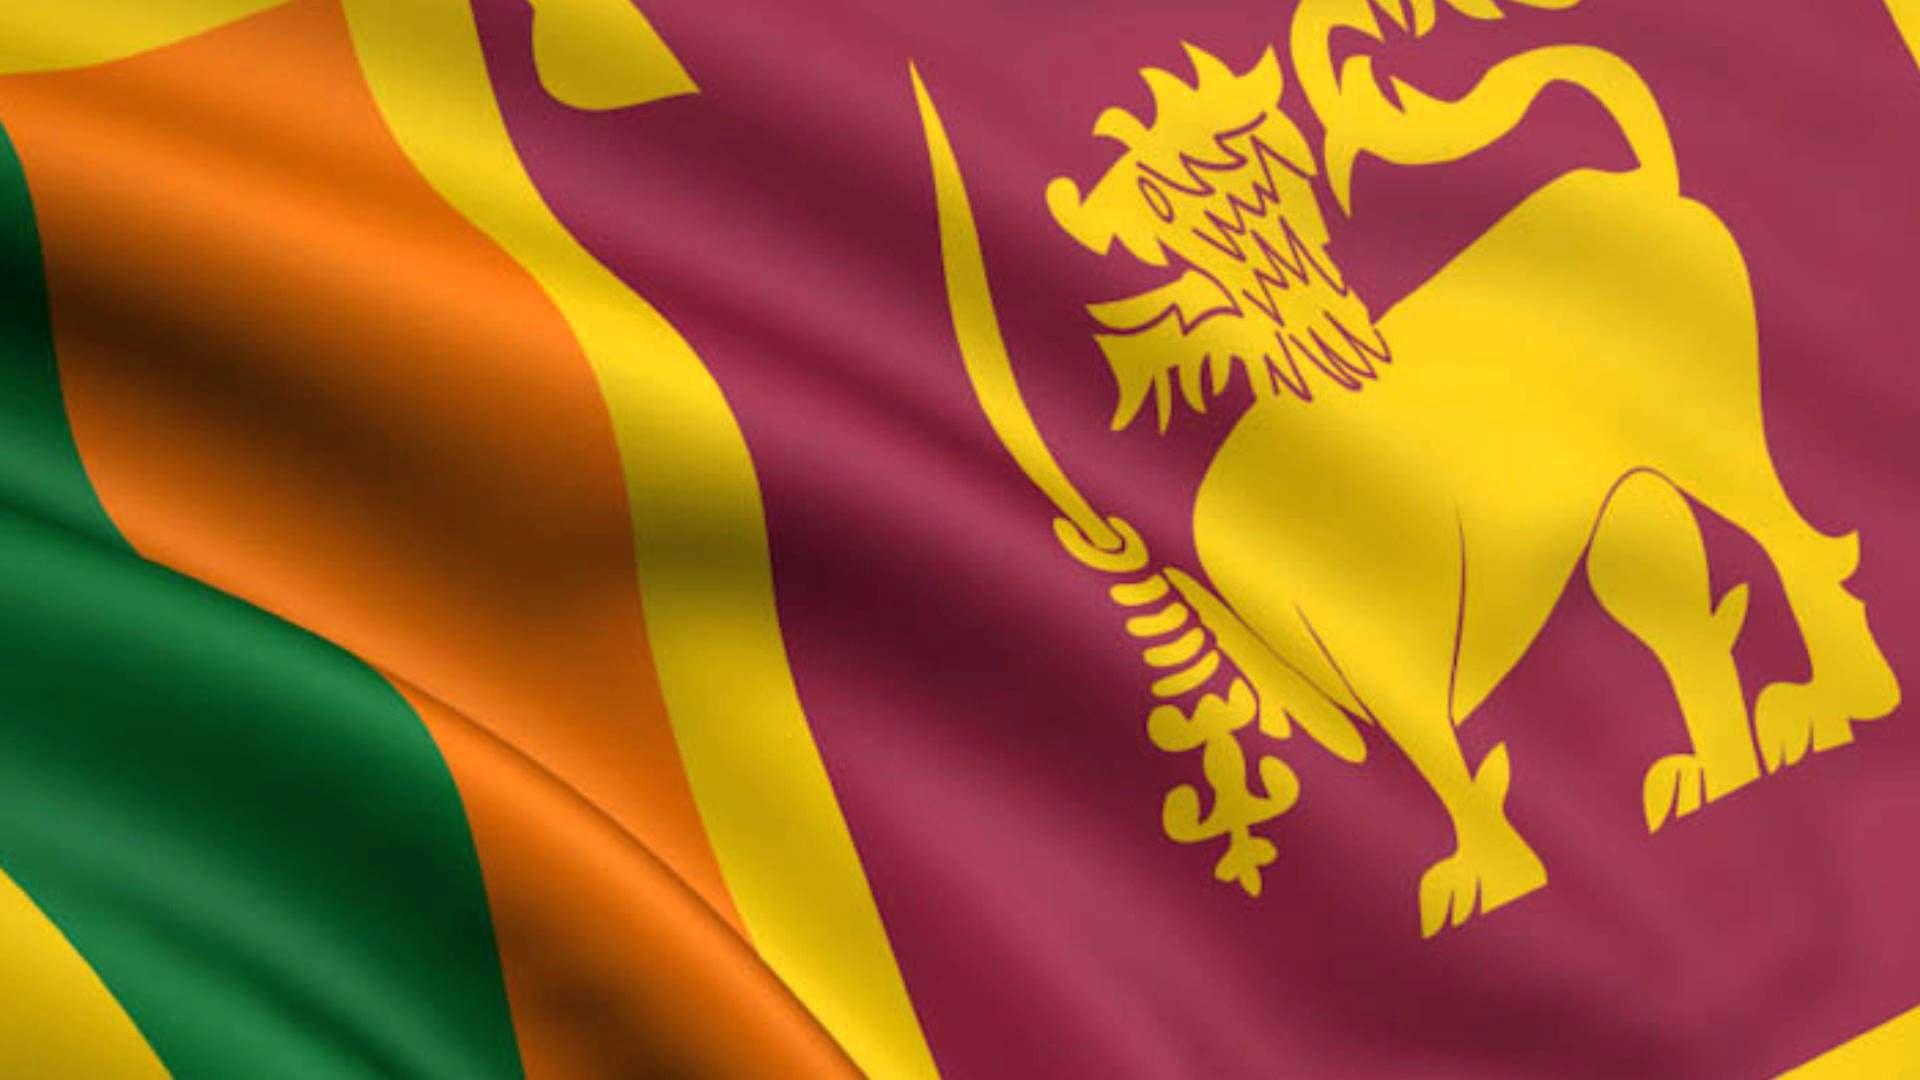 Sri Lanka Flag Wallpaper. Sri Lanka di 2019. Sri lanka